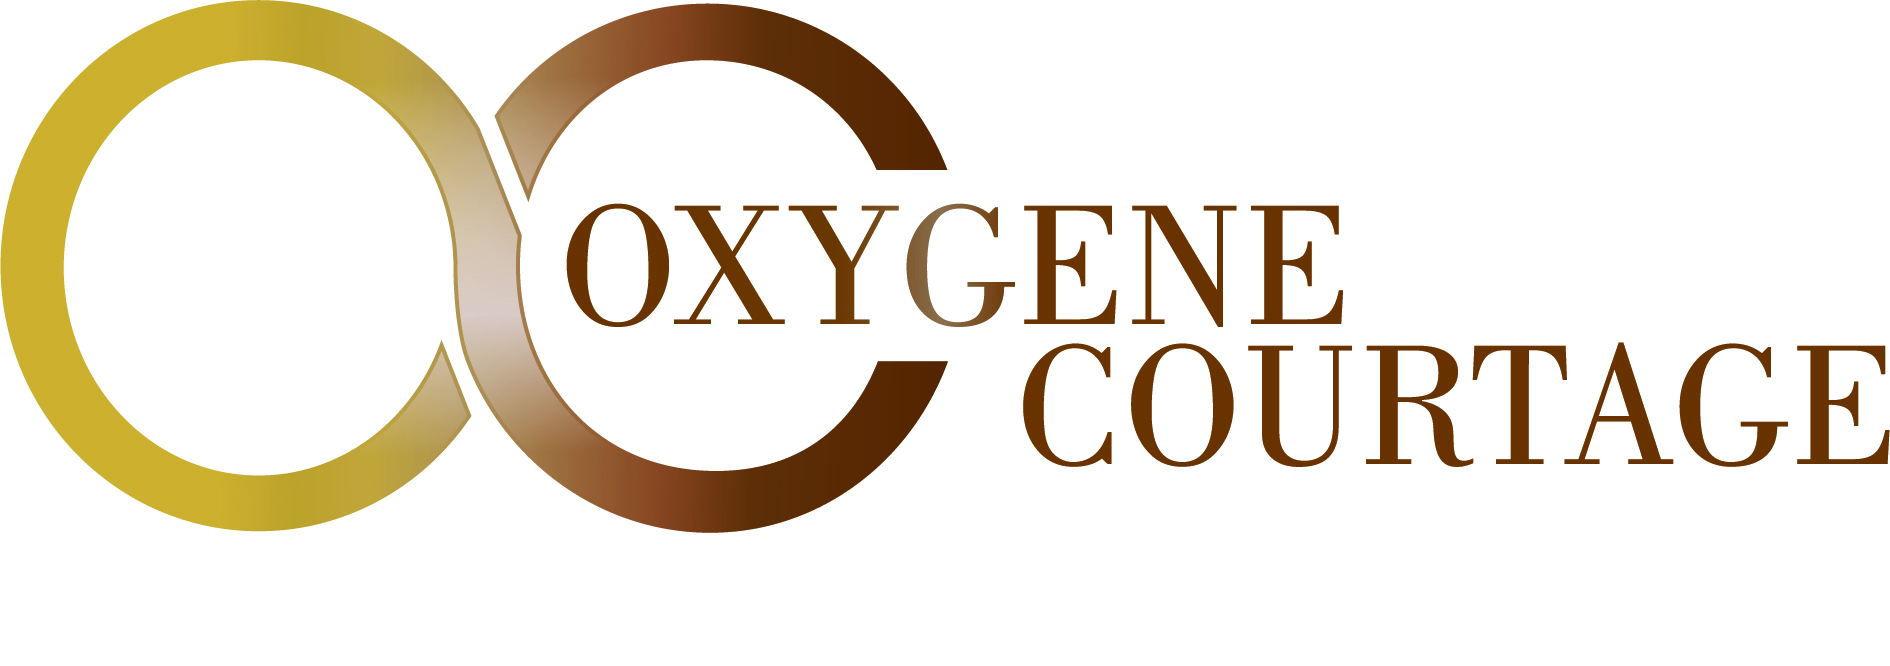 logo oxygene courtage